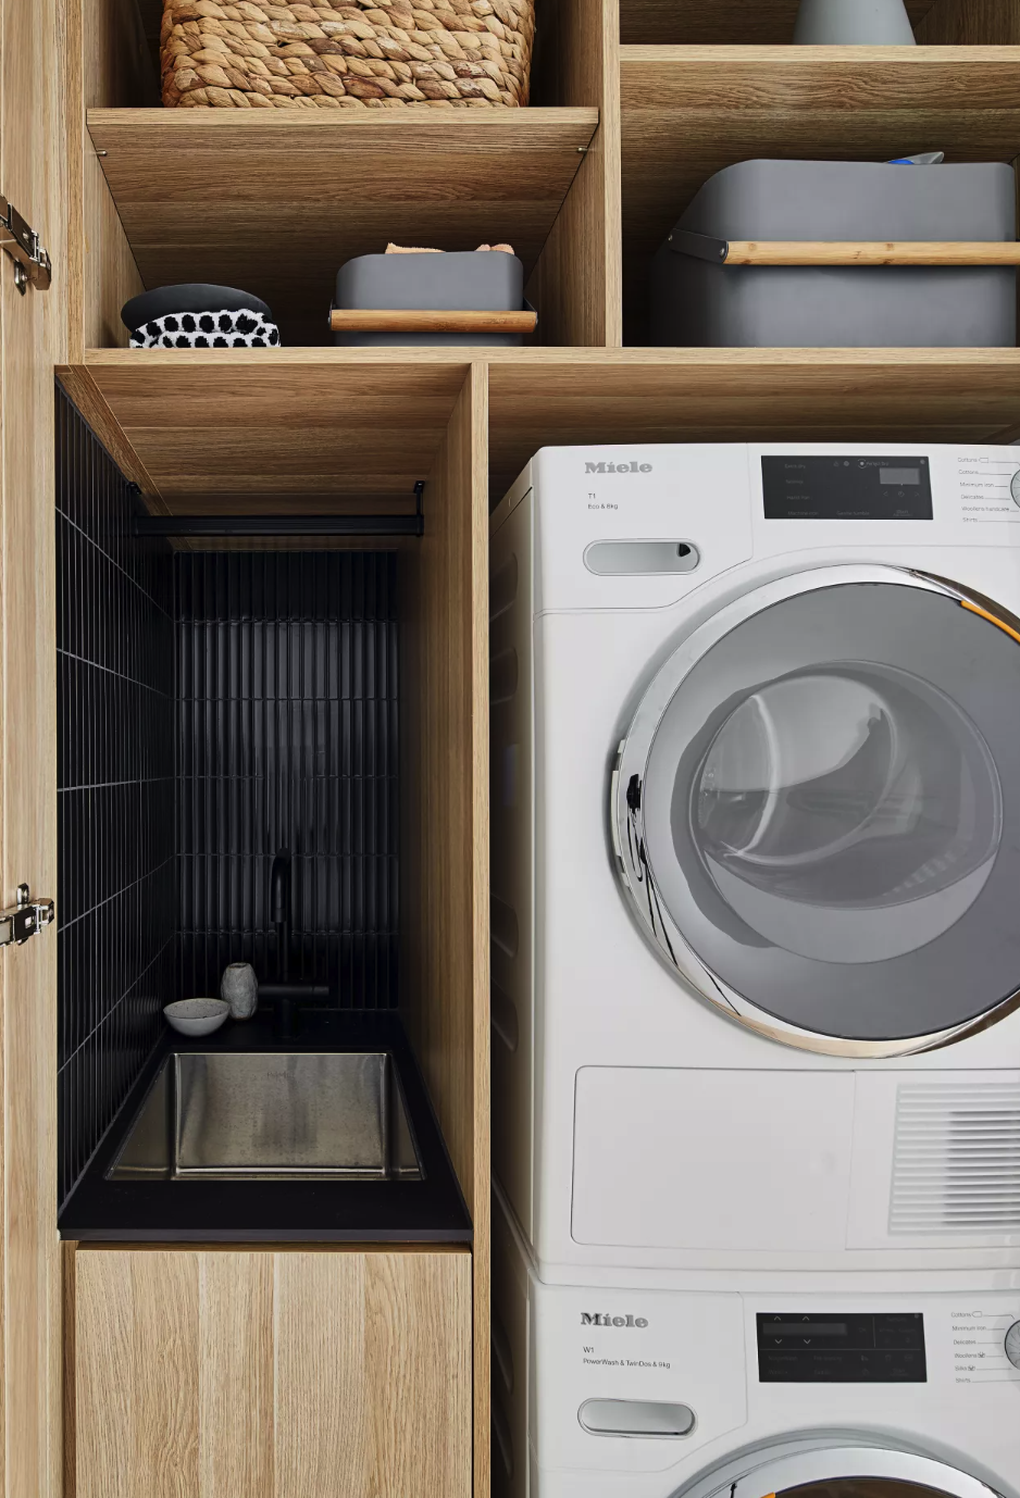 Mách bạn 5 cách để giấu máy giặt gọn gàng